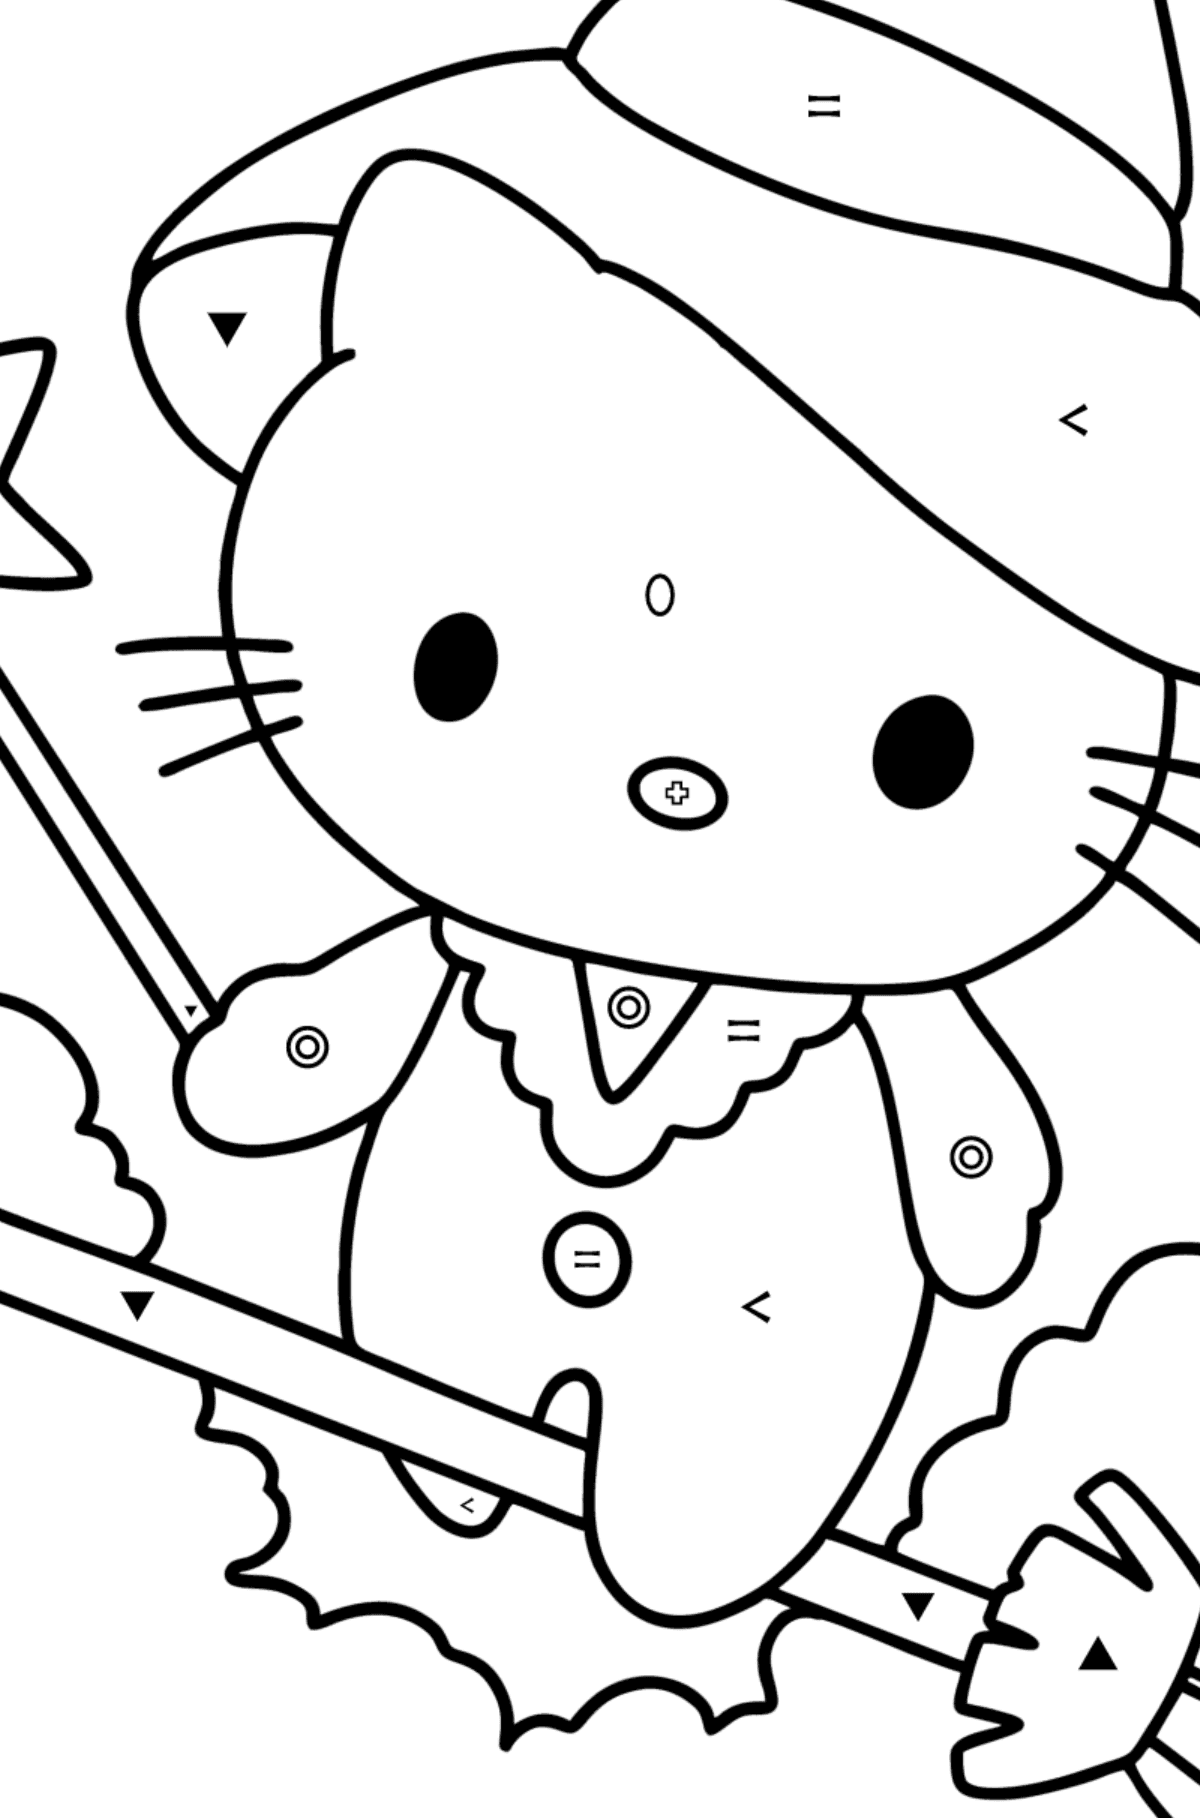 Boyama sayfası Hello Kitty cadılar bayramı - Sembollere ve Geometrik Şekillerle Boyama çocuklar için